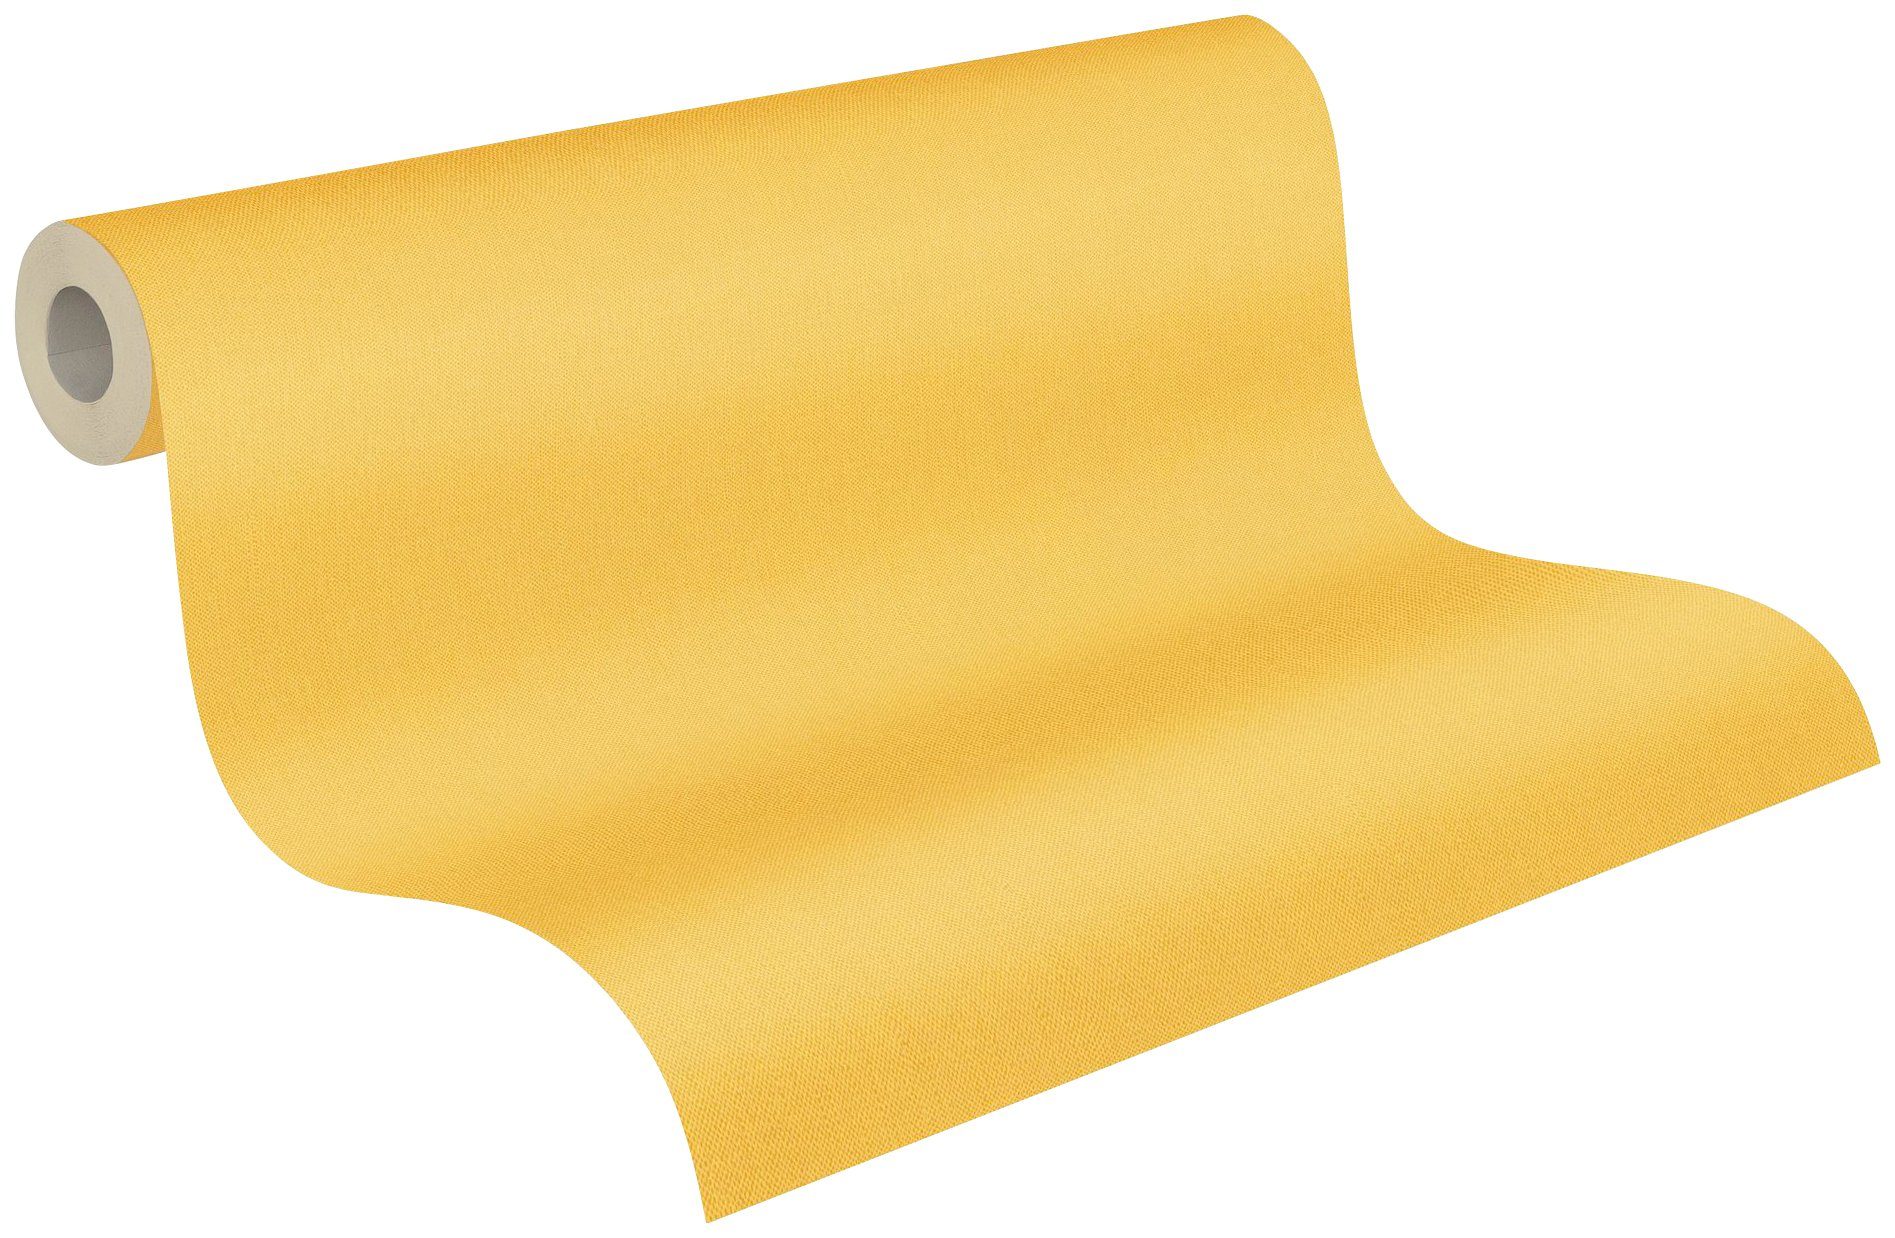 Architects Paper Tapete glatt, einfarbig einfarbig, unifarben, gelb Floral Vliestapete Impression, Uni